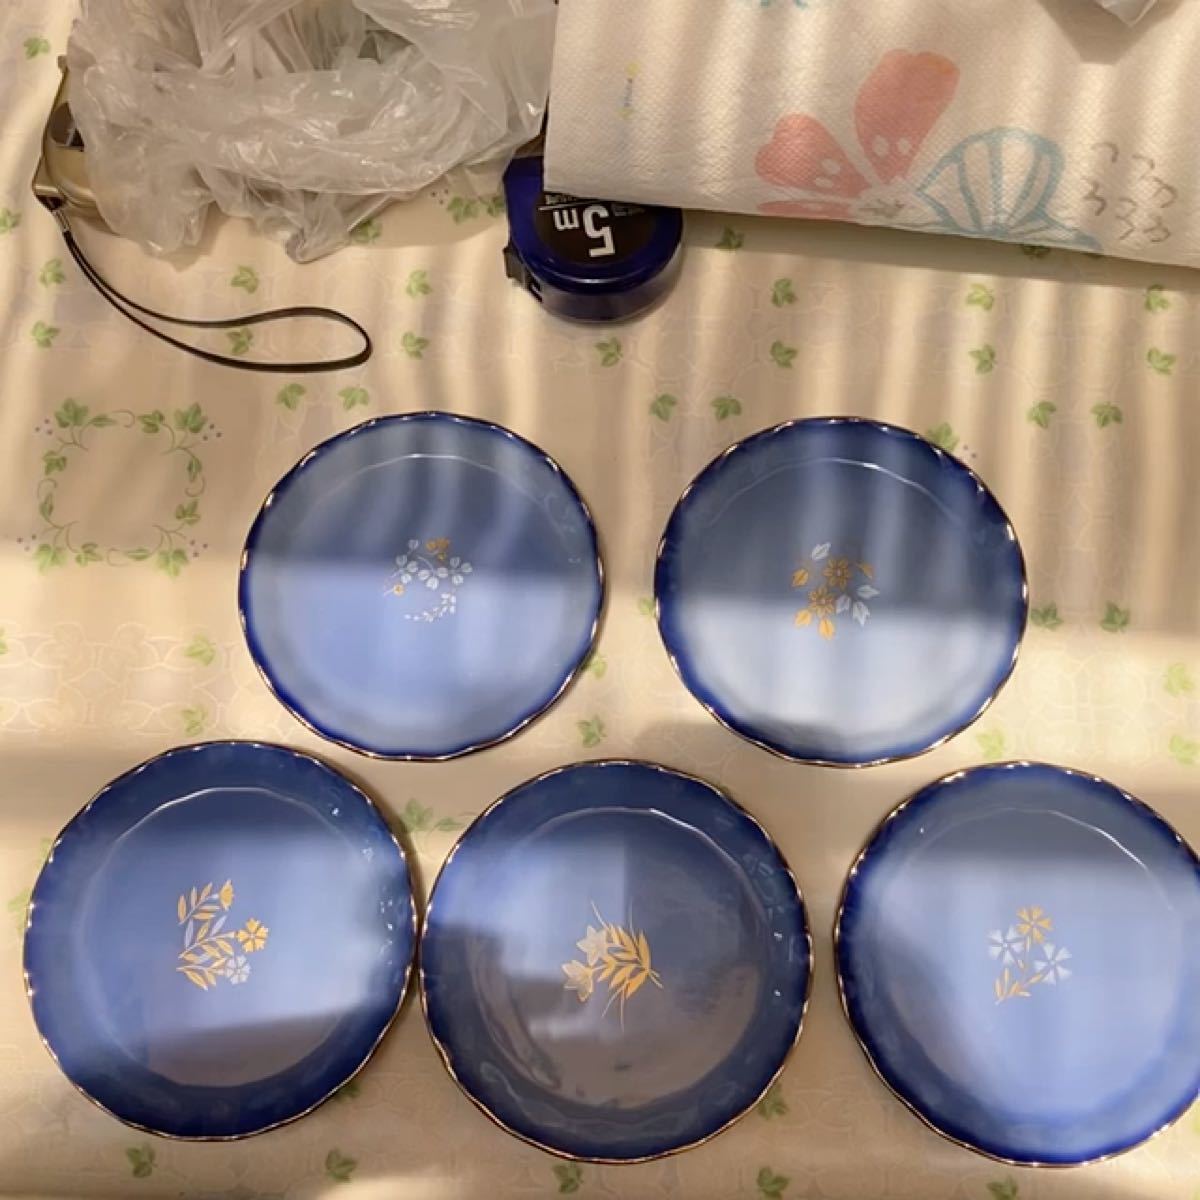 ブルー系 涼しげ 小皿 5枚セット 新品未使用(小傷多数ありの為格安出品)